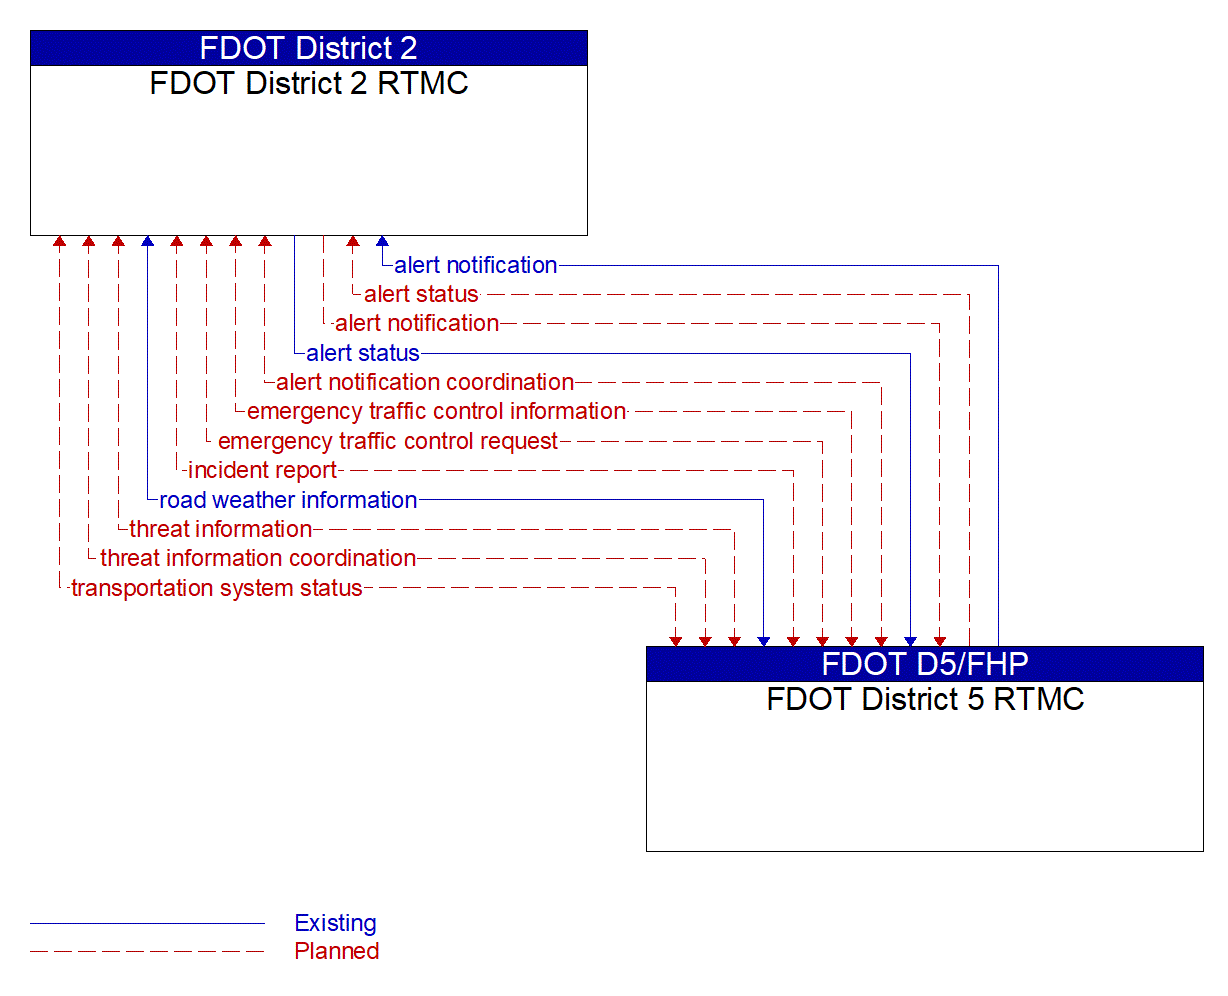 Architecture Flow Diagram: FDOT District 5 RTMC <--> FDOT District 2 RTMC